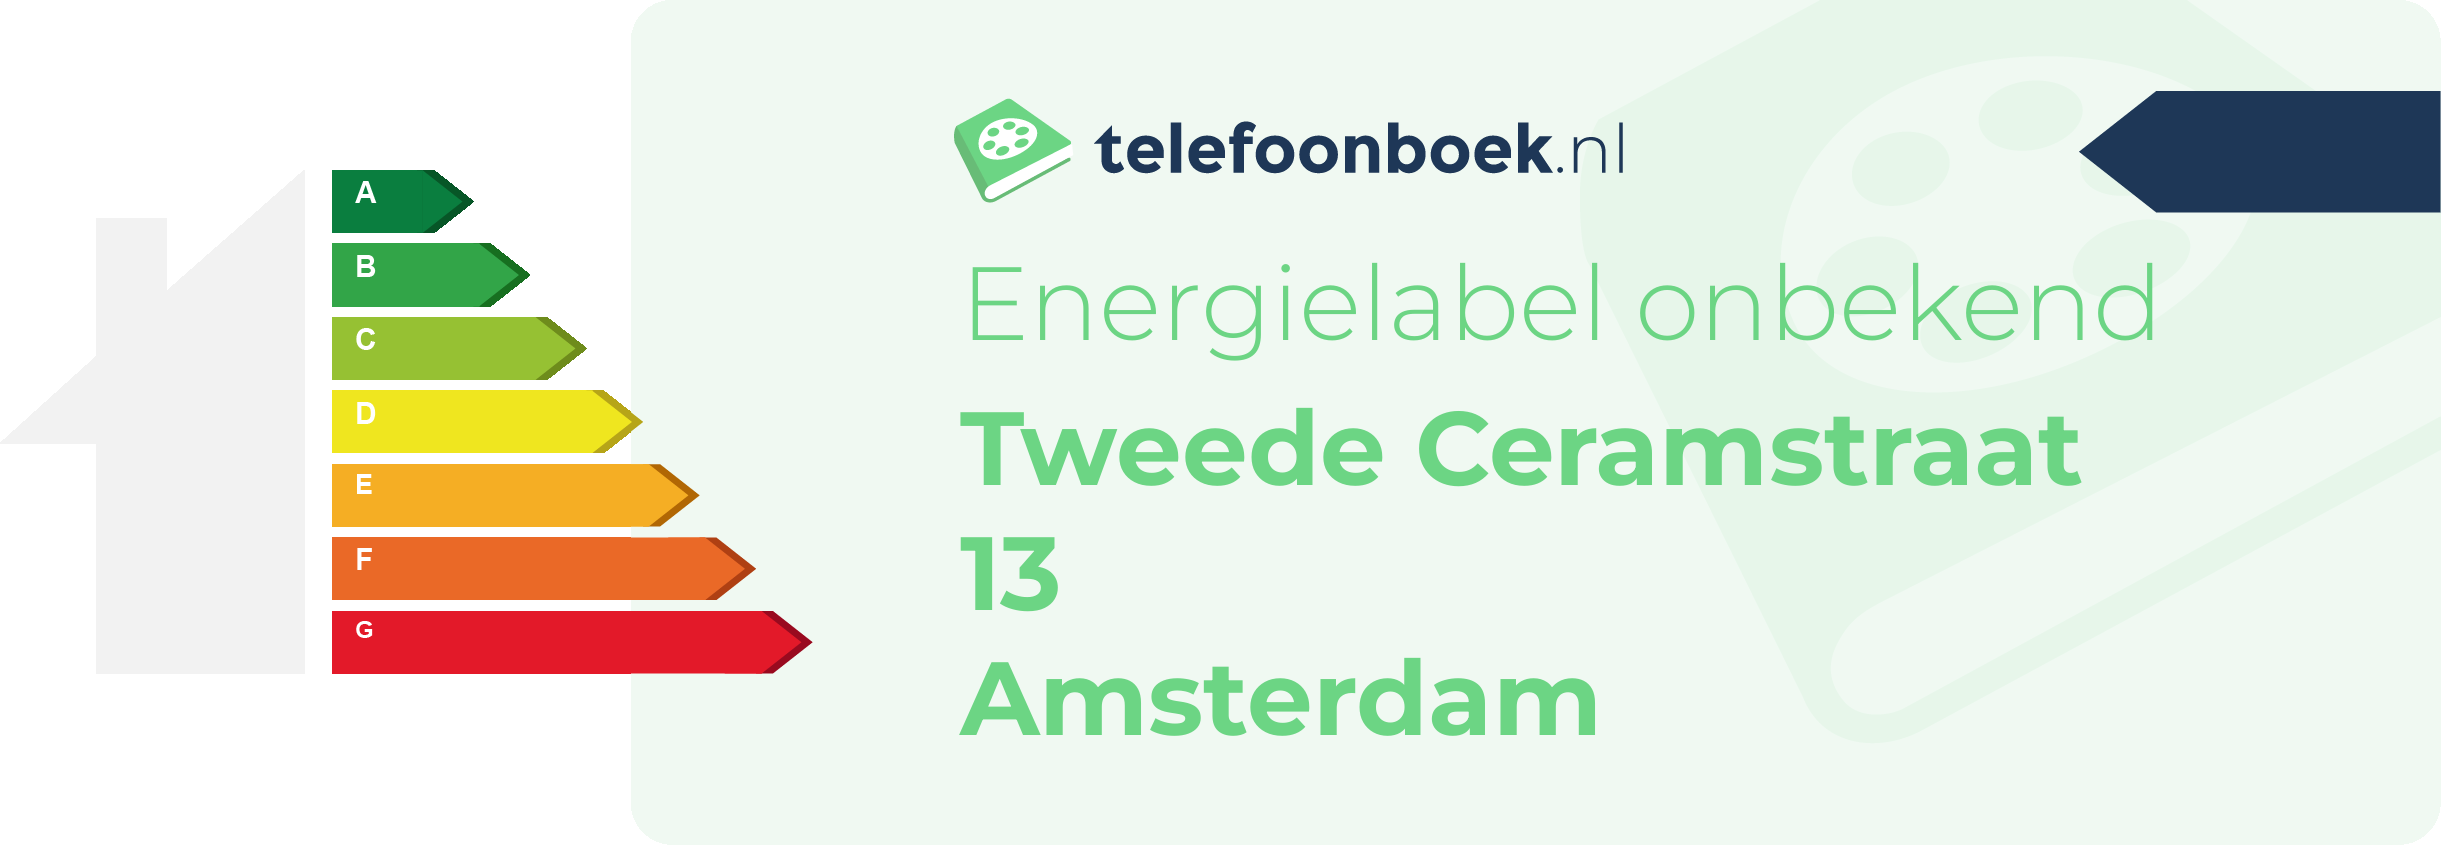 Energielabel Tweede Ceramstraat 13 Amsterdam